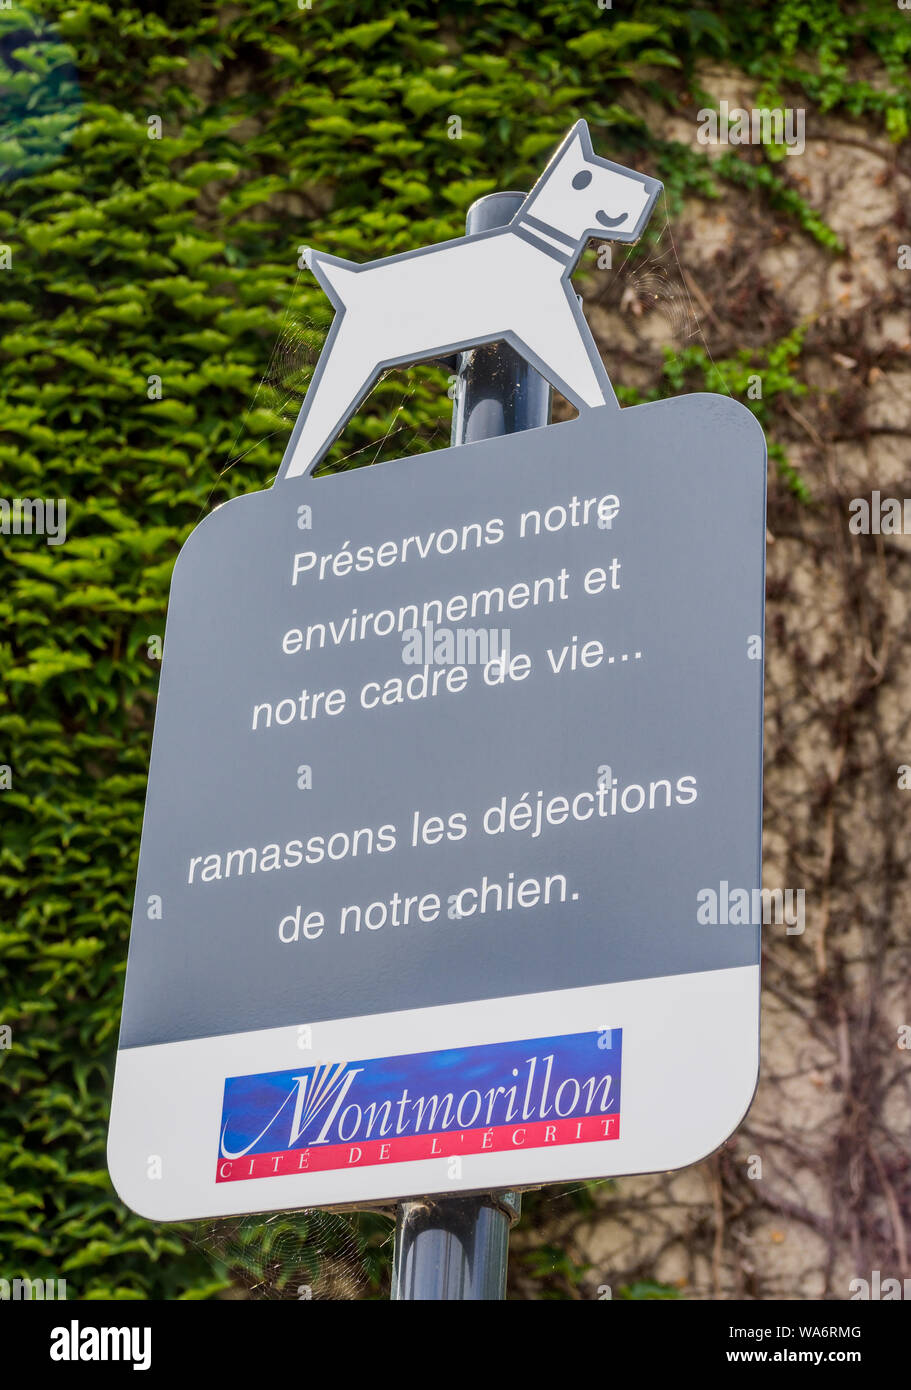 Hinweis für Hundebesitzer über Verschmutzung Wanderwege - Montmorillon, Frankreich. Stockfoto